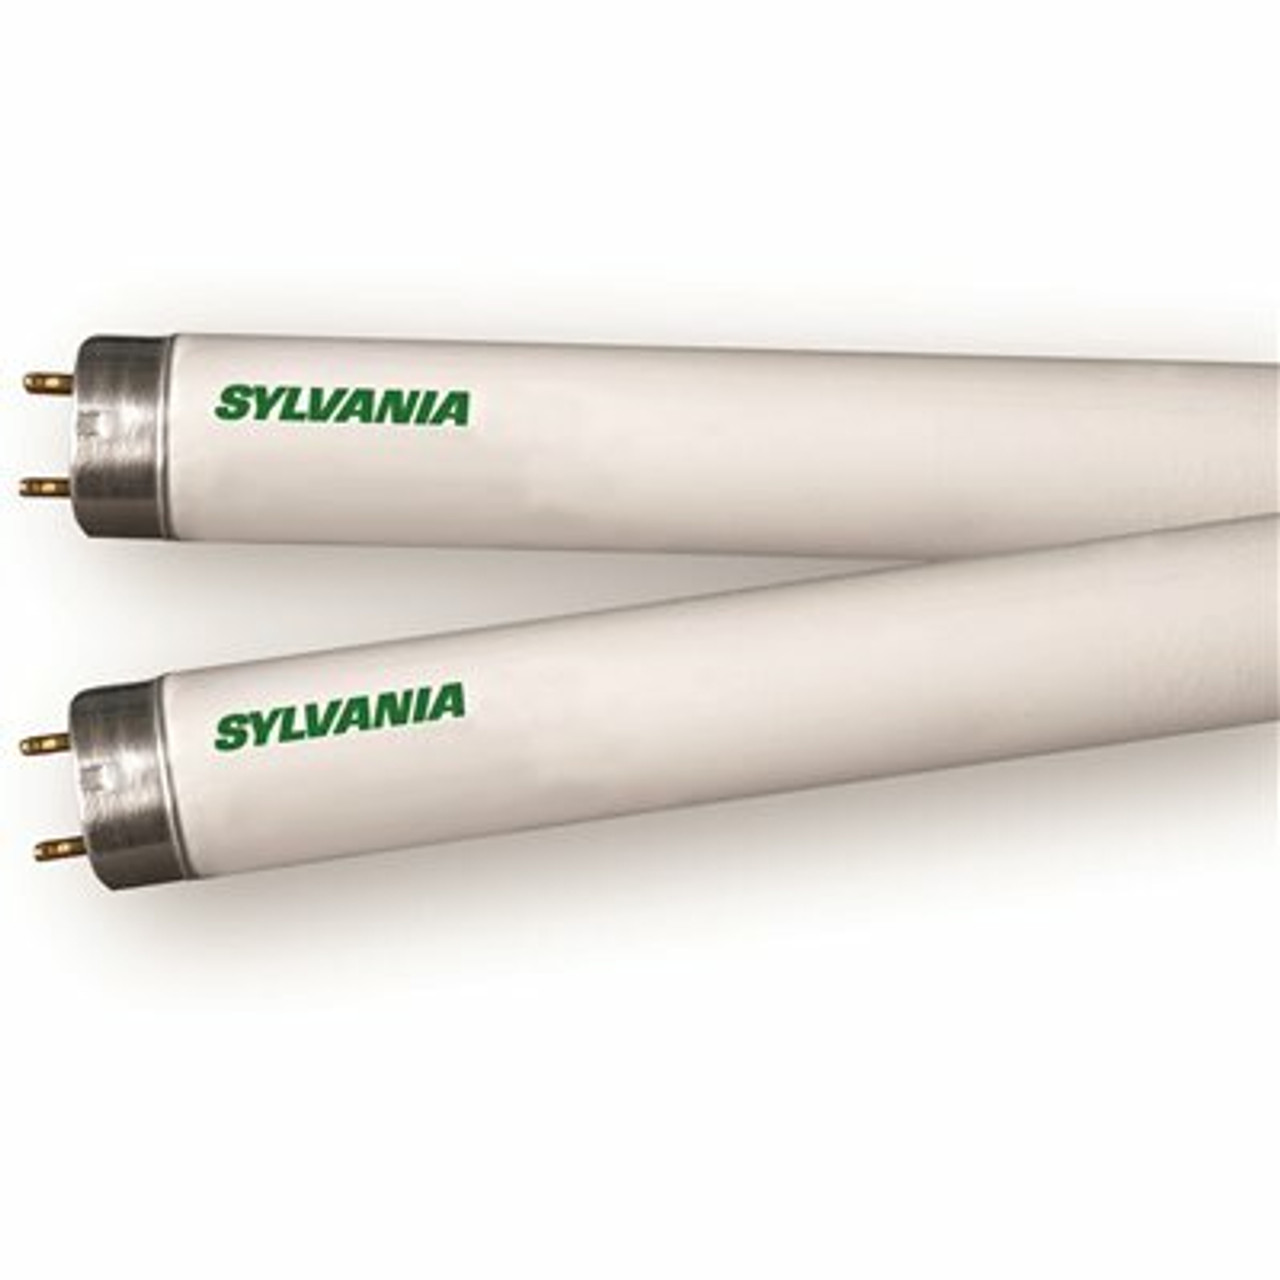 Sylvania 4 Ft. 32-Watt Linear T8 Fluorescent Tube Light Bulb, Soft White (2-Pack)